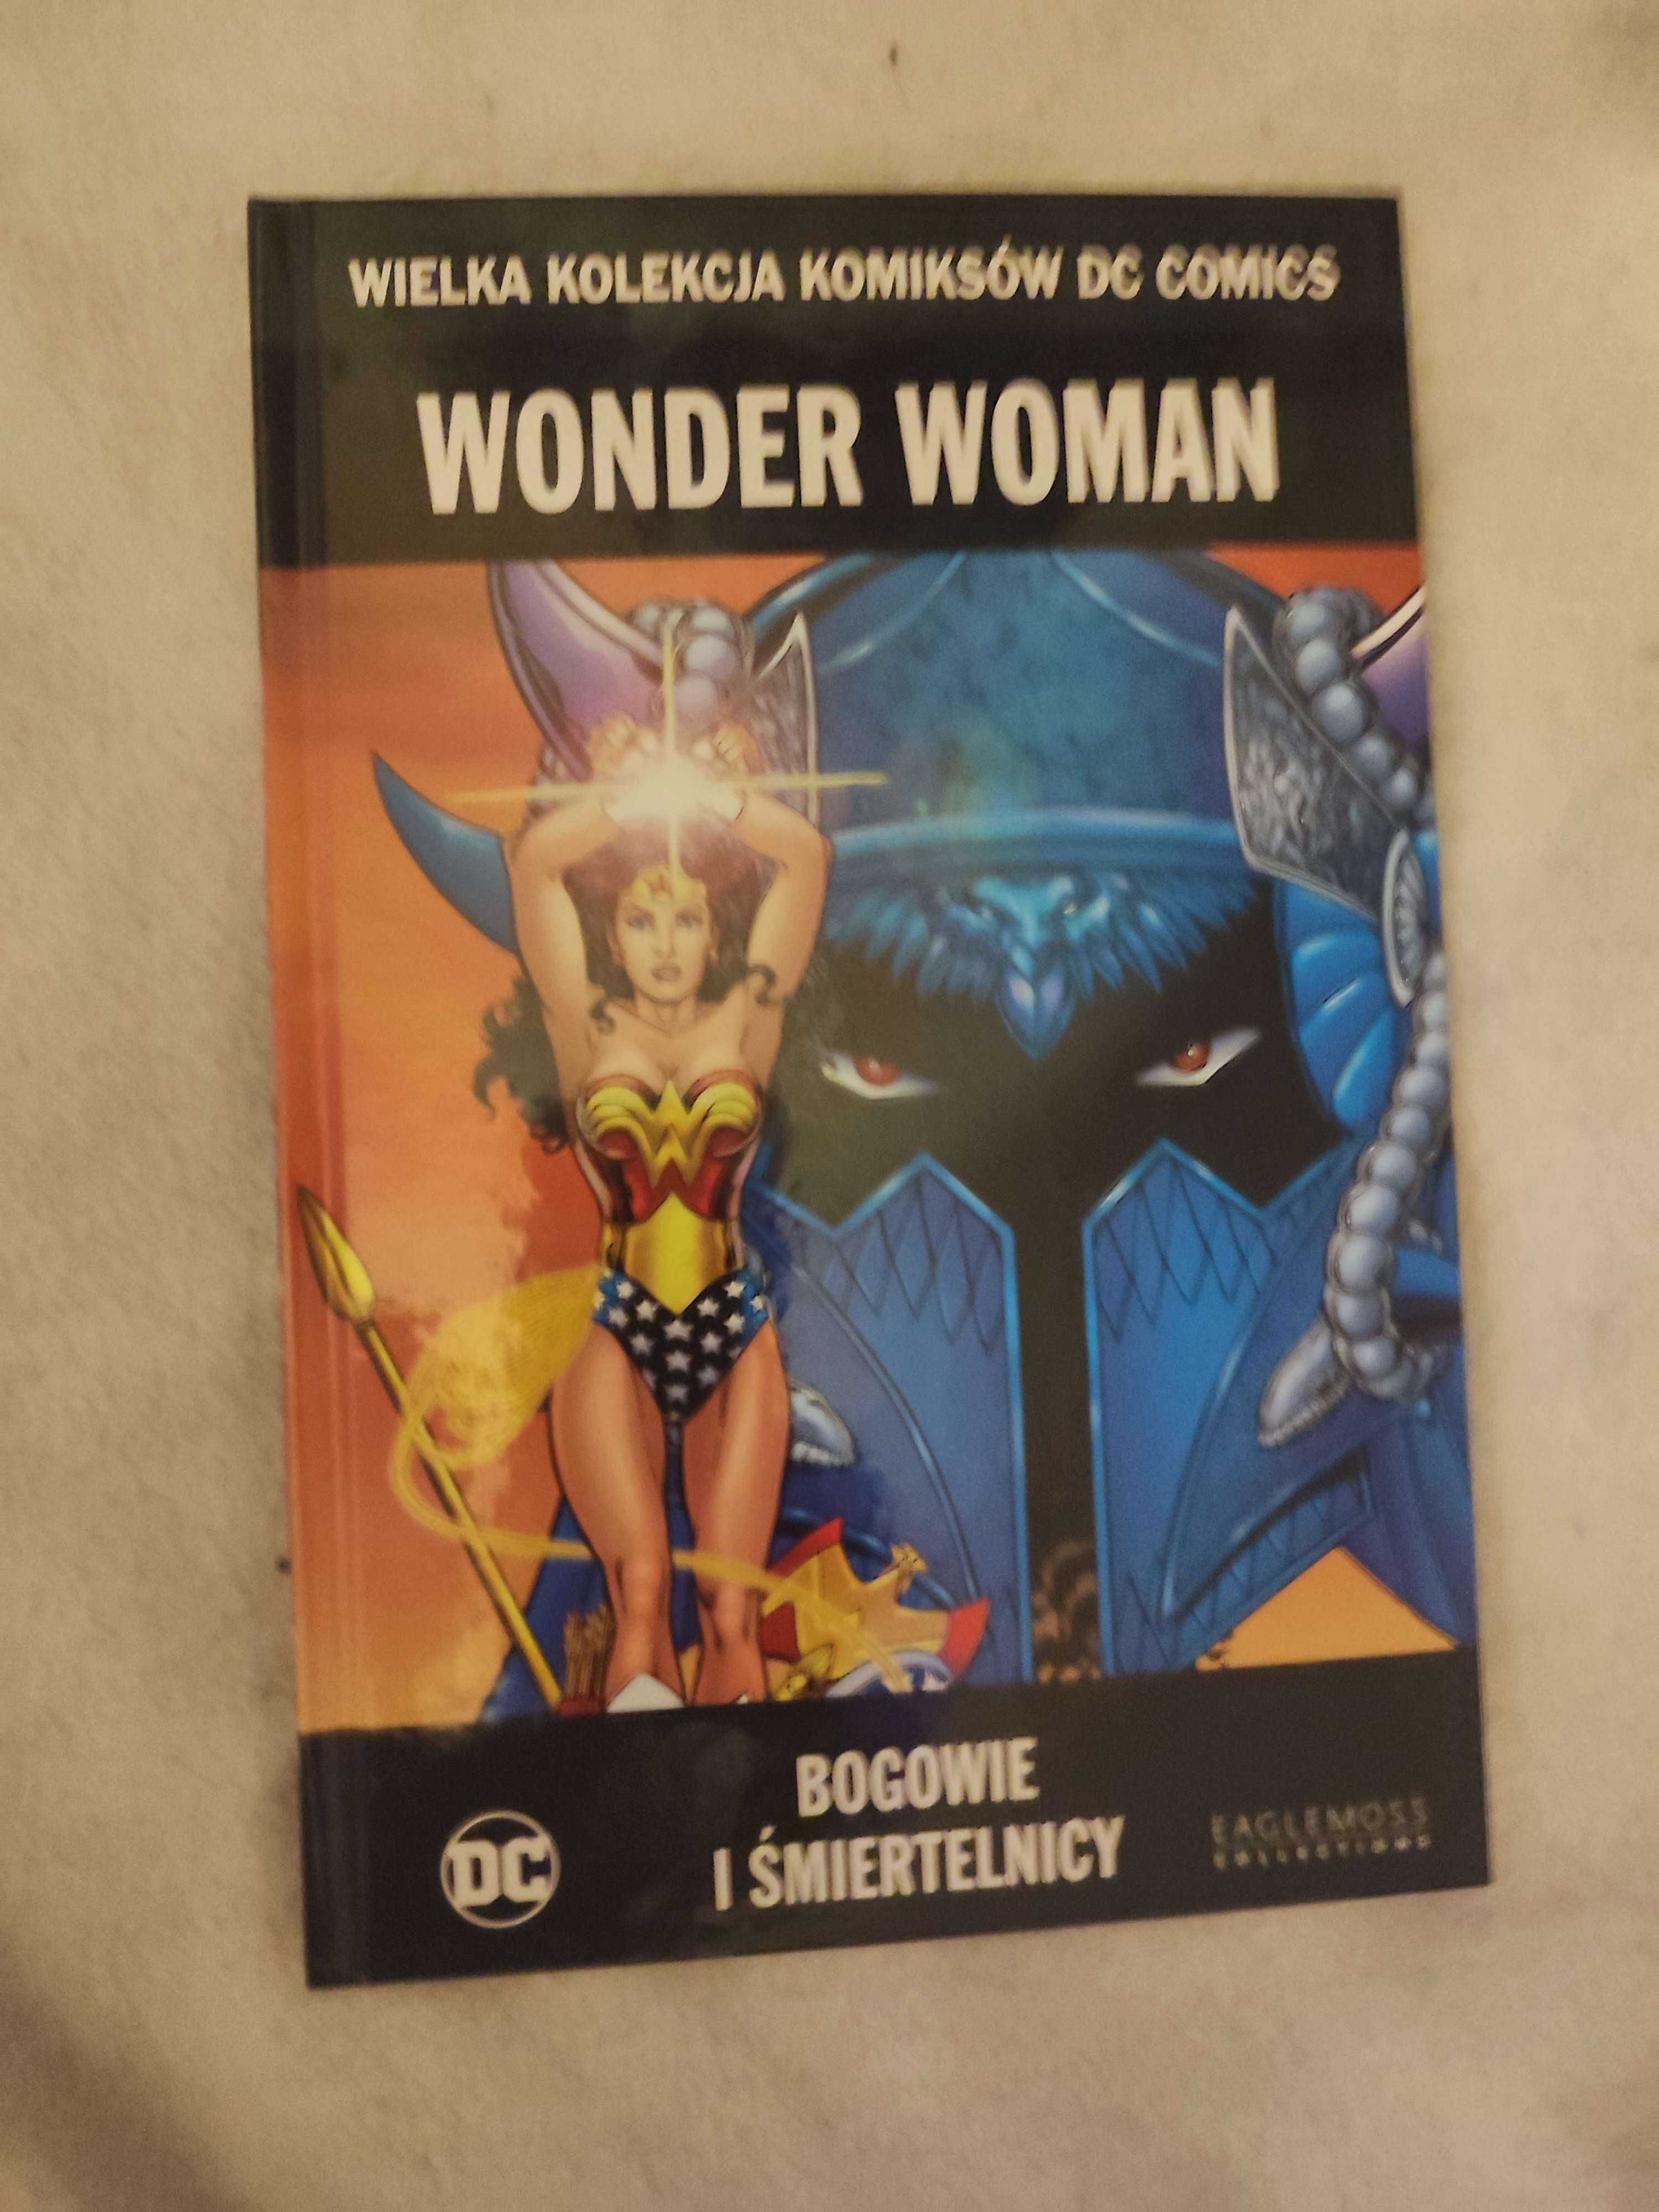 Wkkdc / Wielka kolekcja komiksów Wonder Woman Bogowie i śmiertelnicy